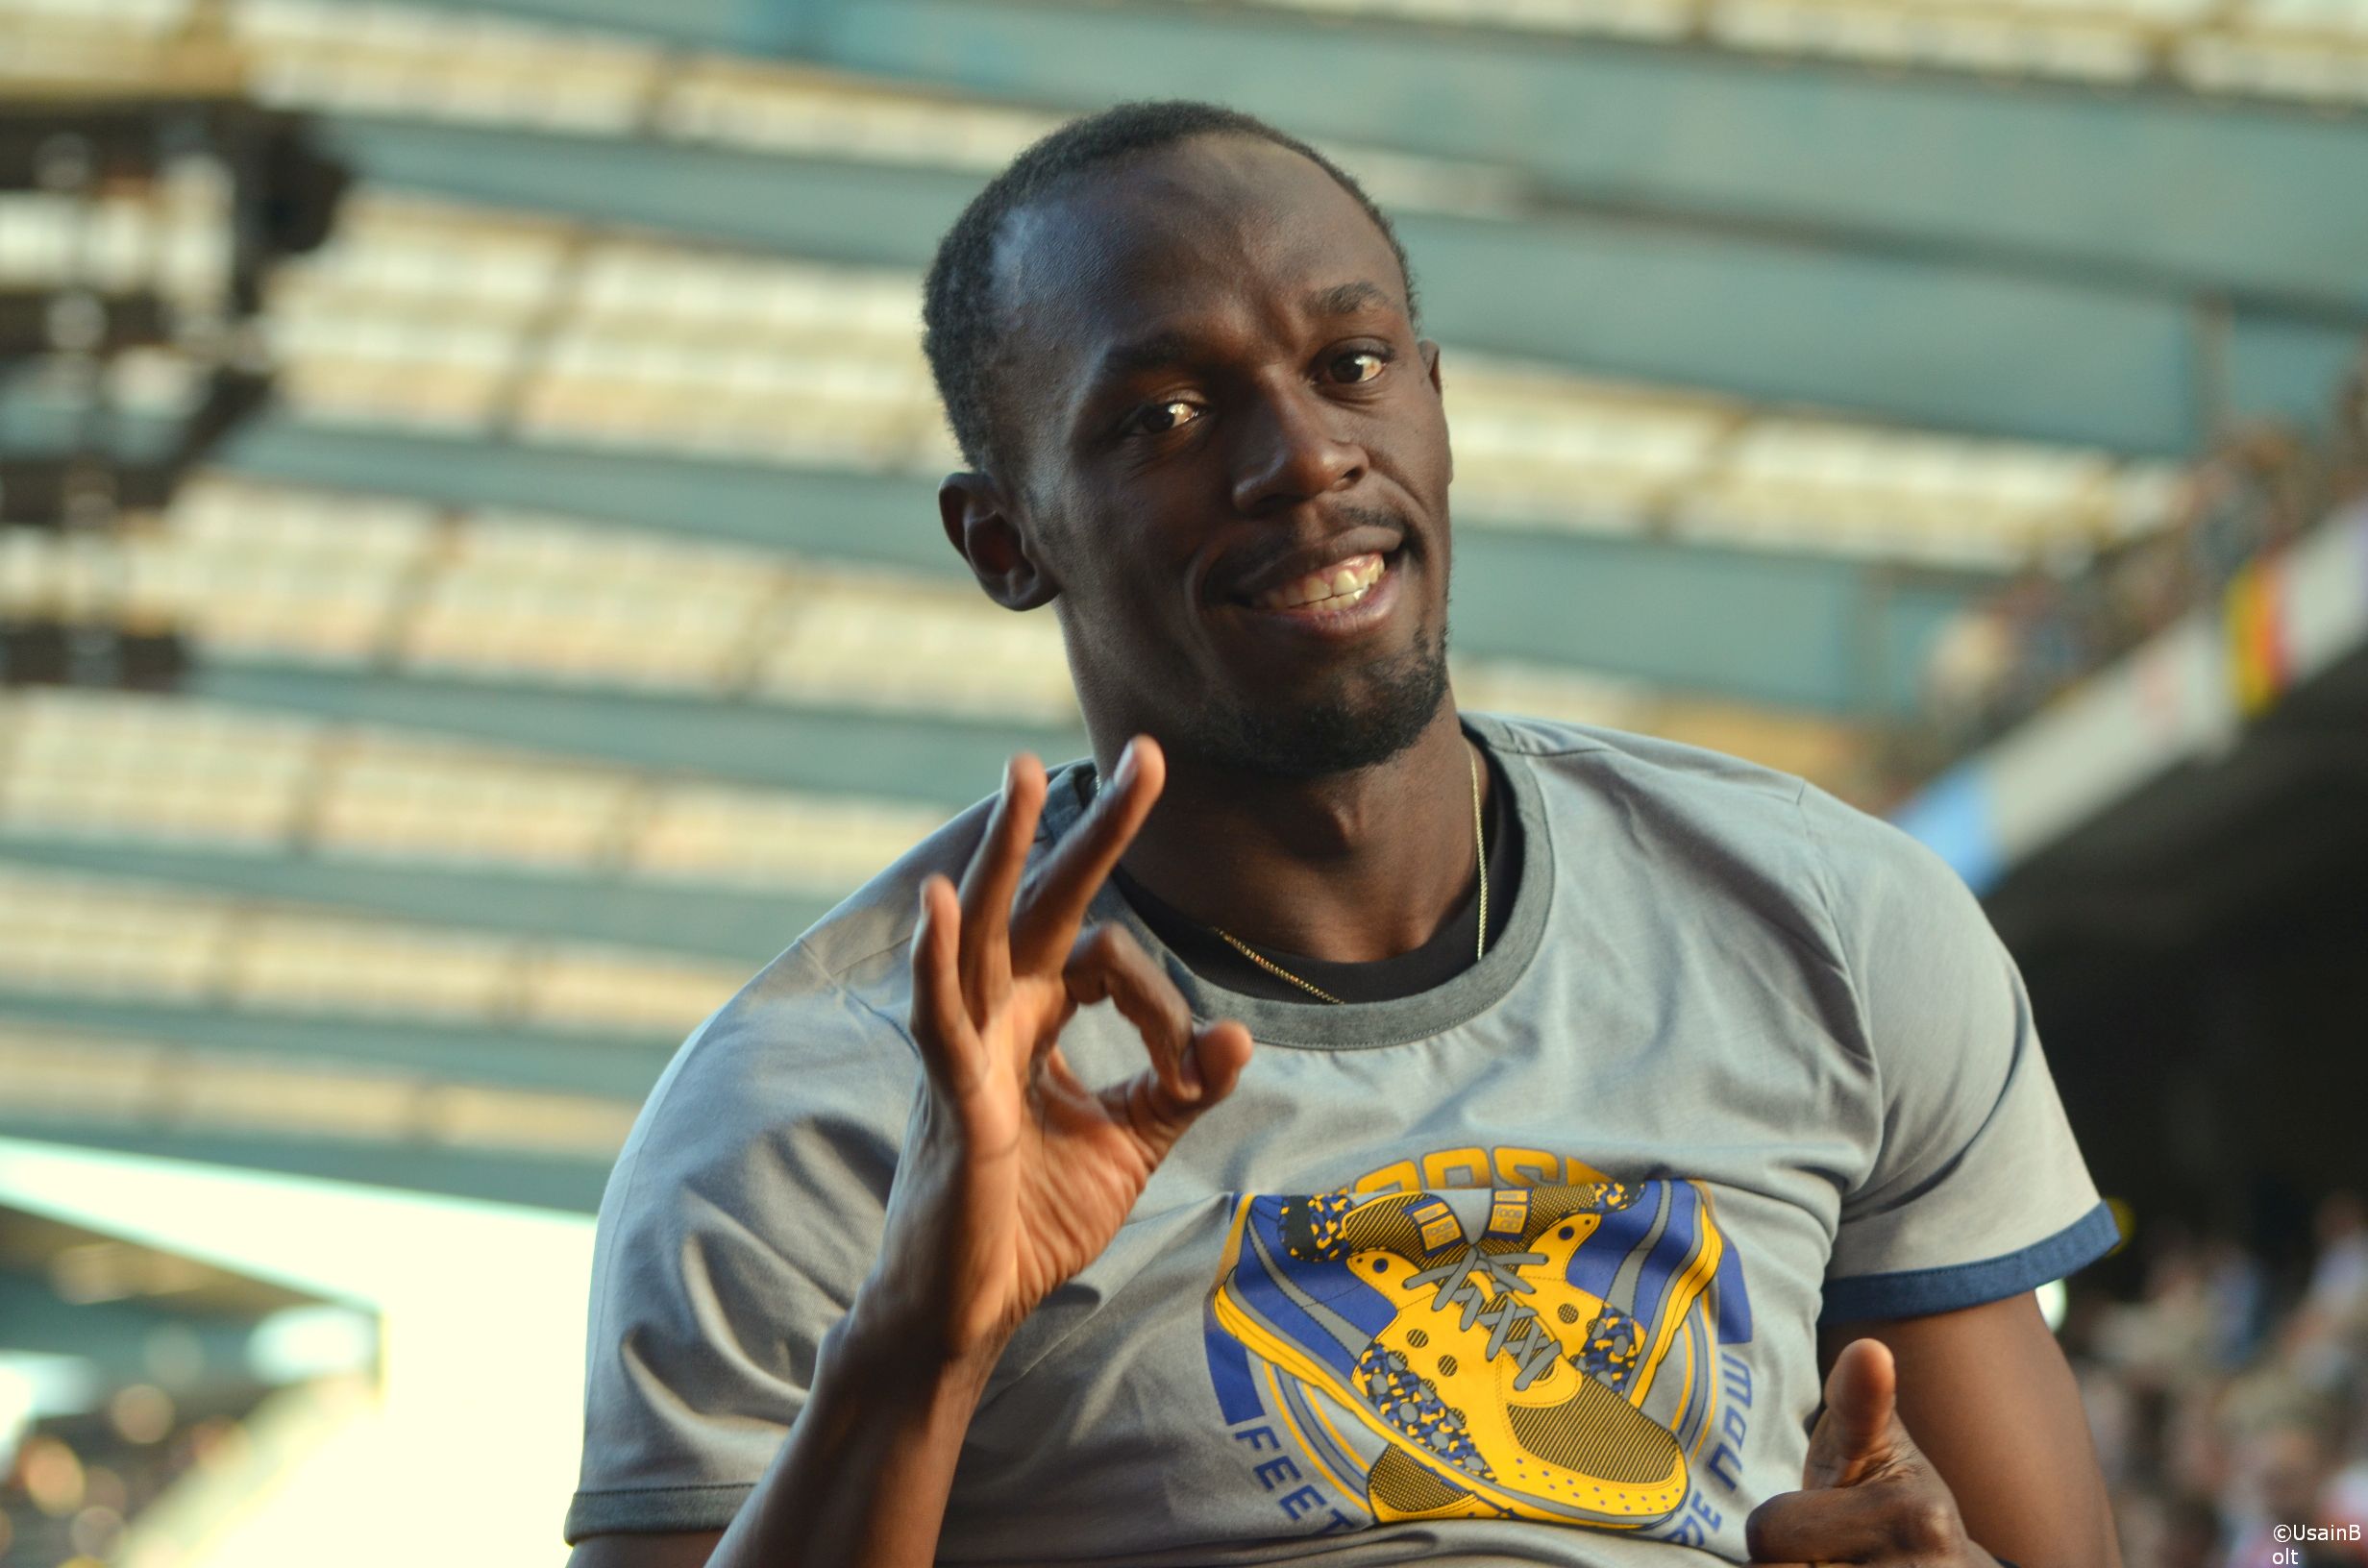 Usain Bolt announced for Brussels MVD on 6th September